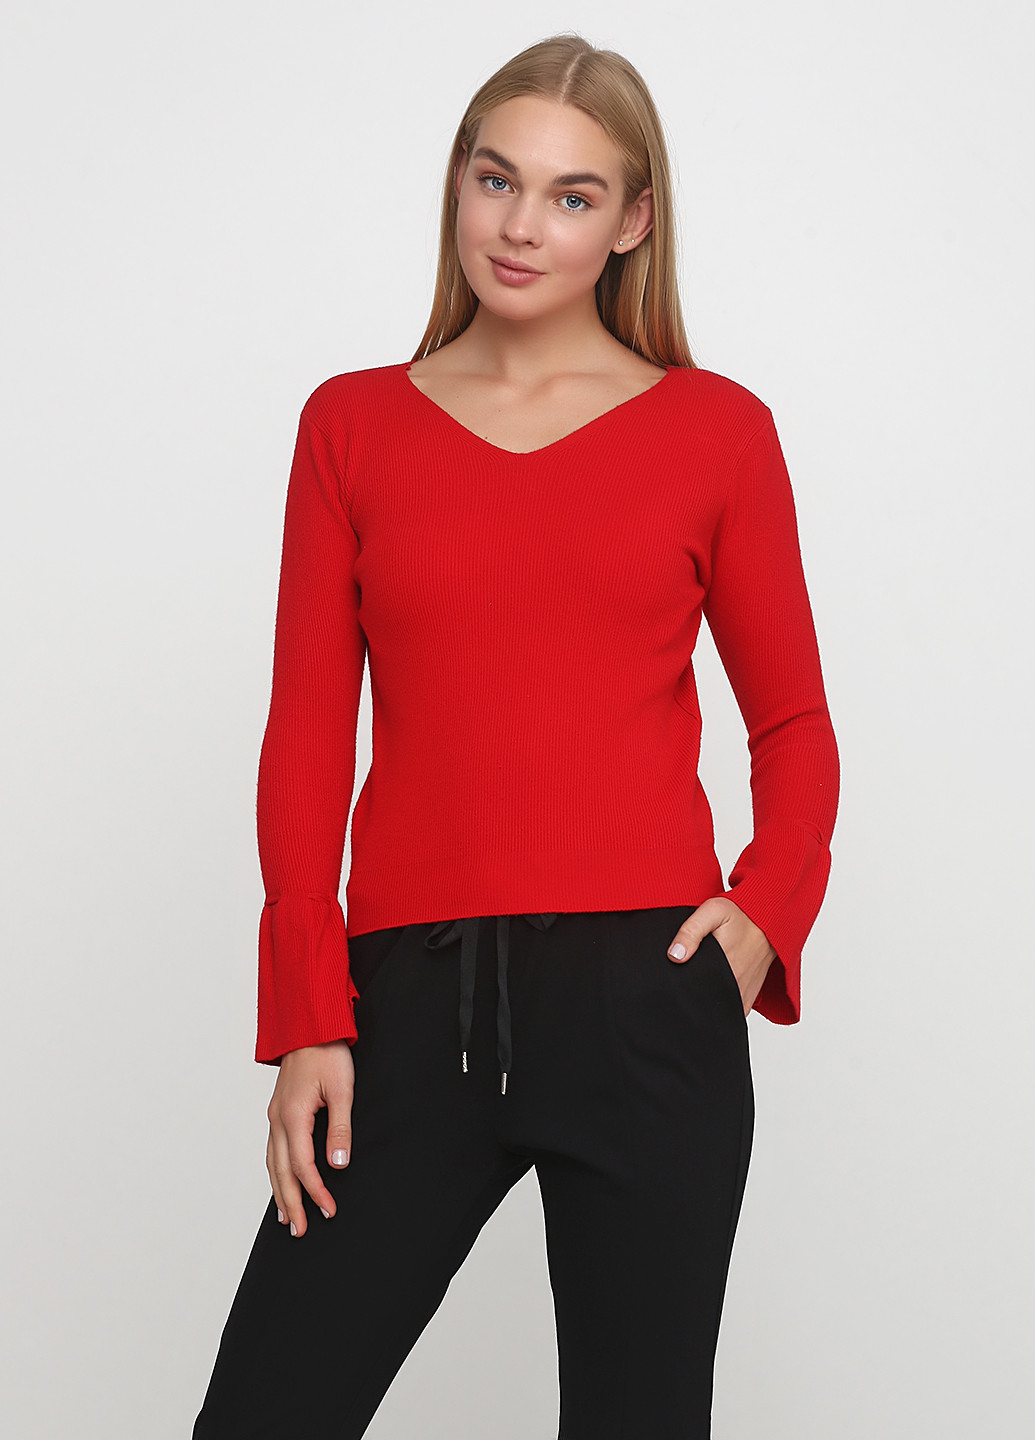 Червоний демісезонний светр пуловер ZUBRYTSKAYA